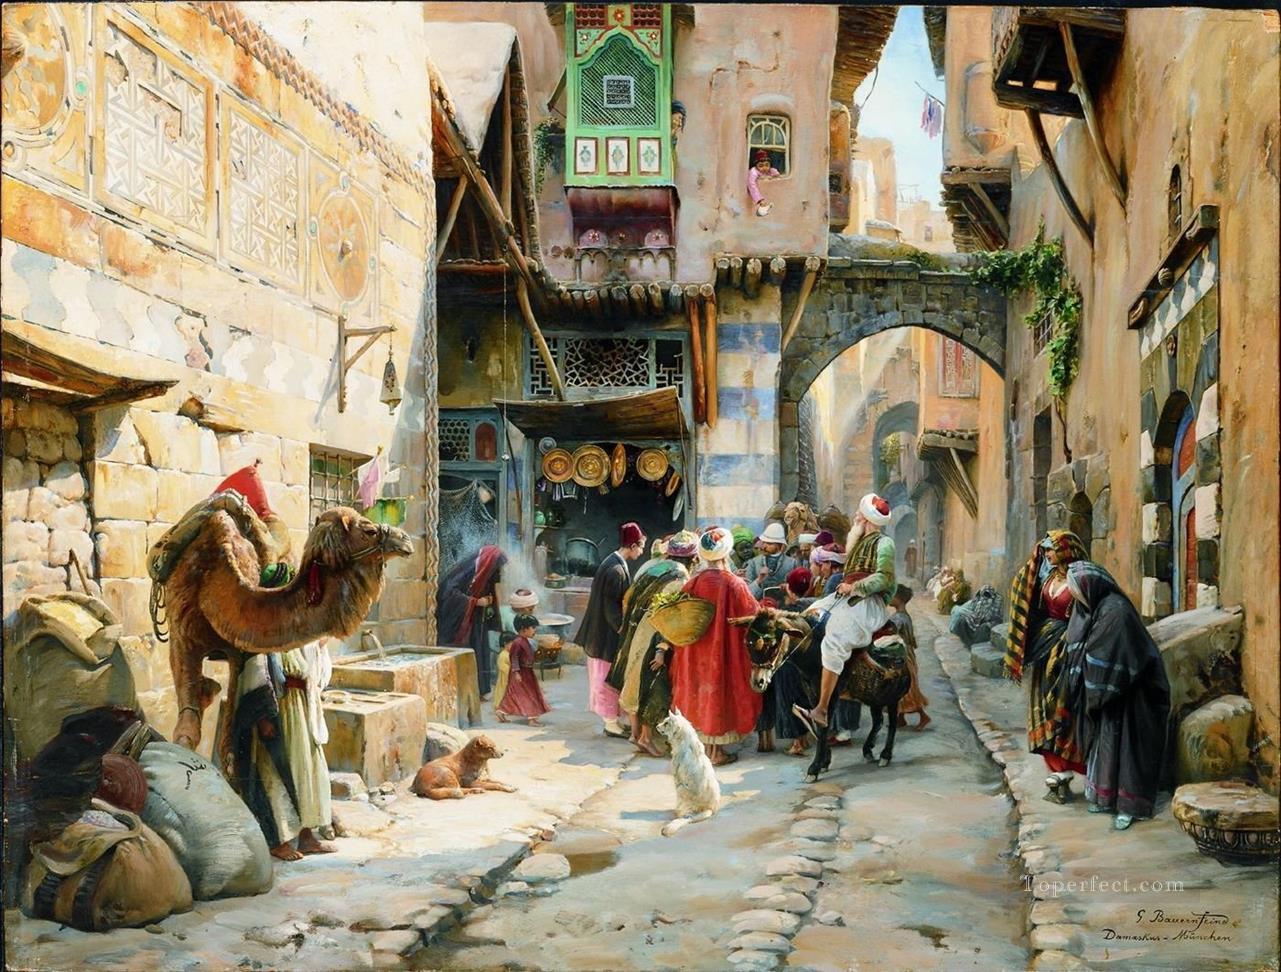 ダマスカスの街並み グスタフ・バウエルンファインド 東洋学者のユダヤ人油絵